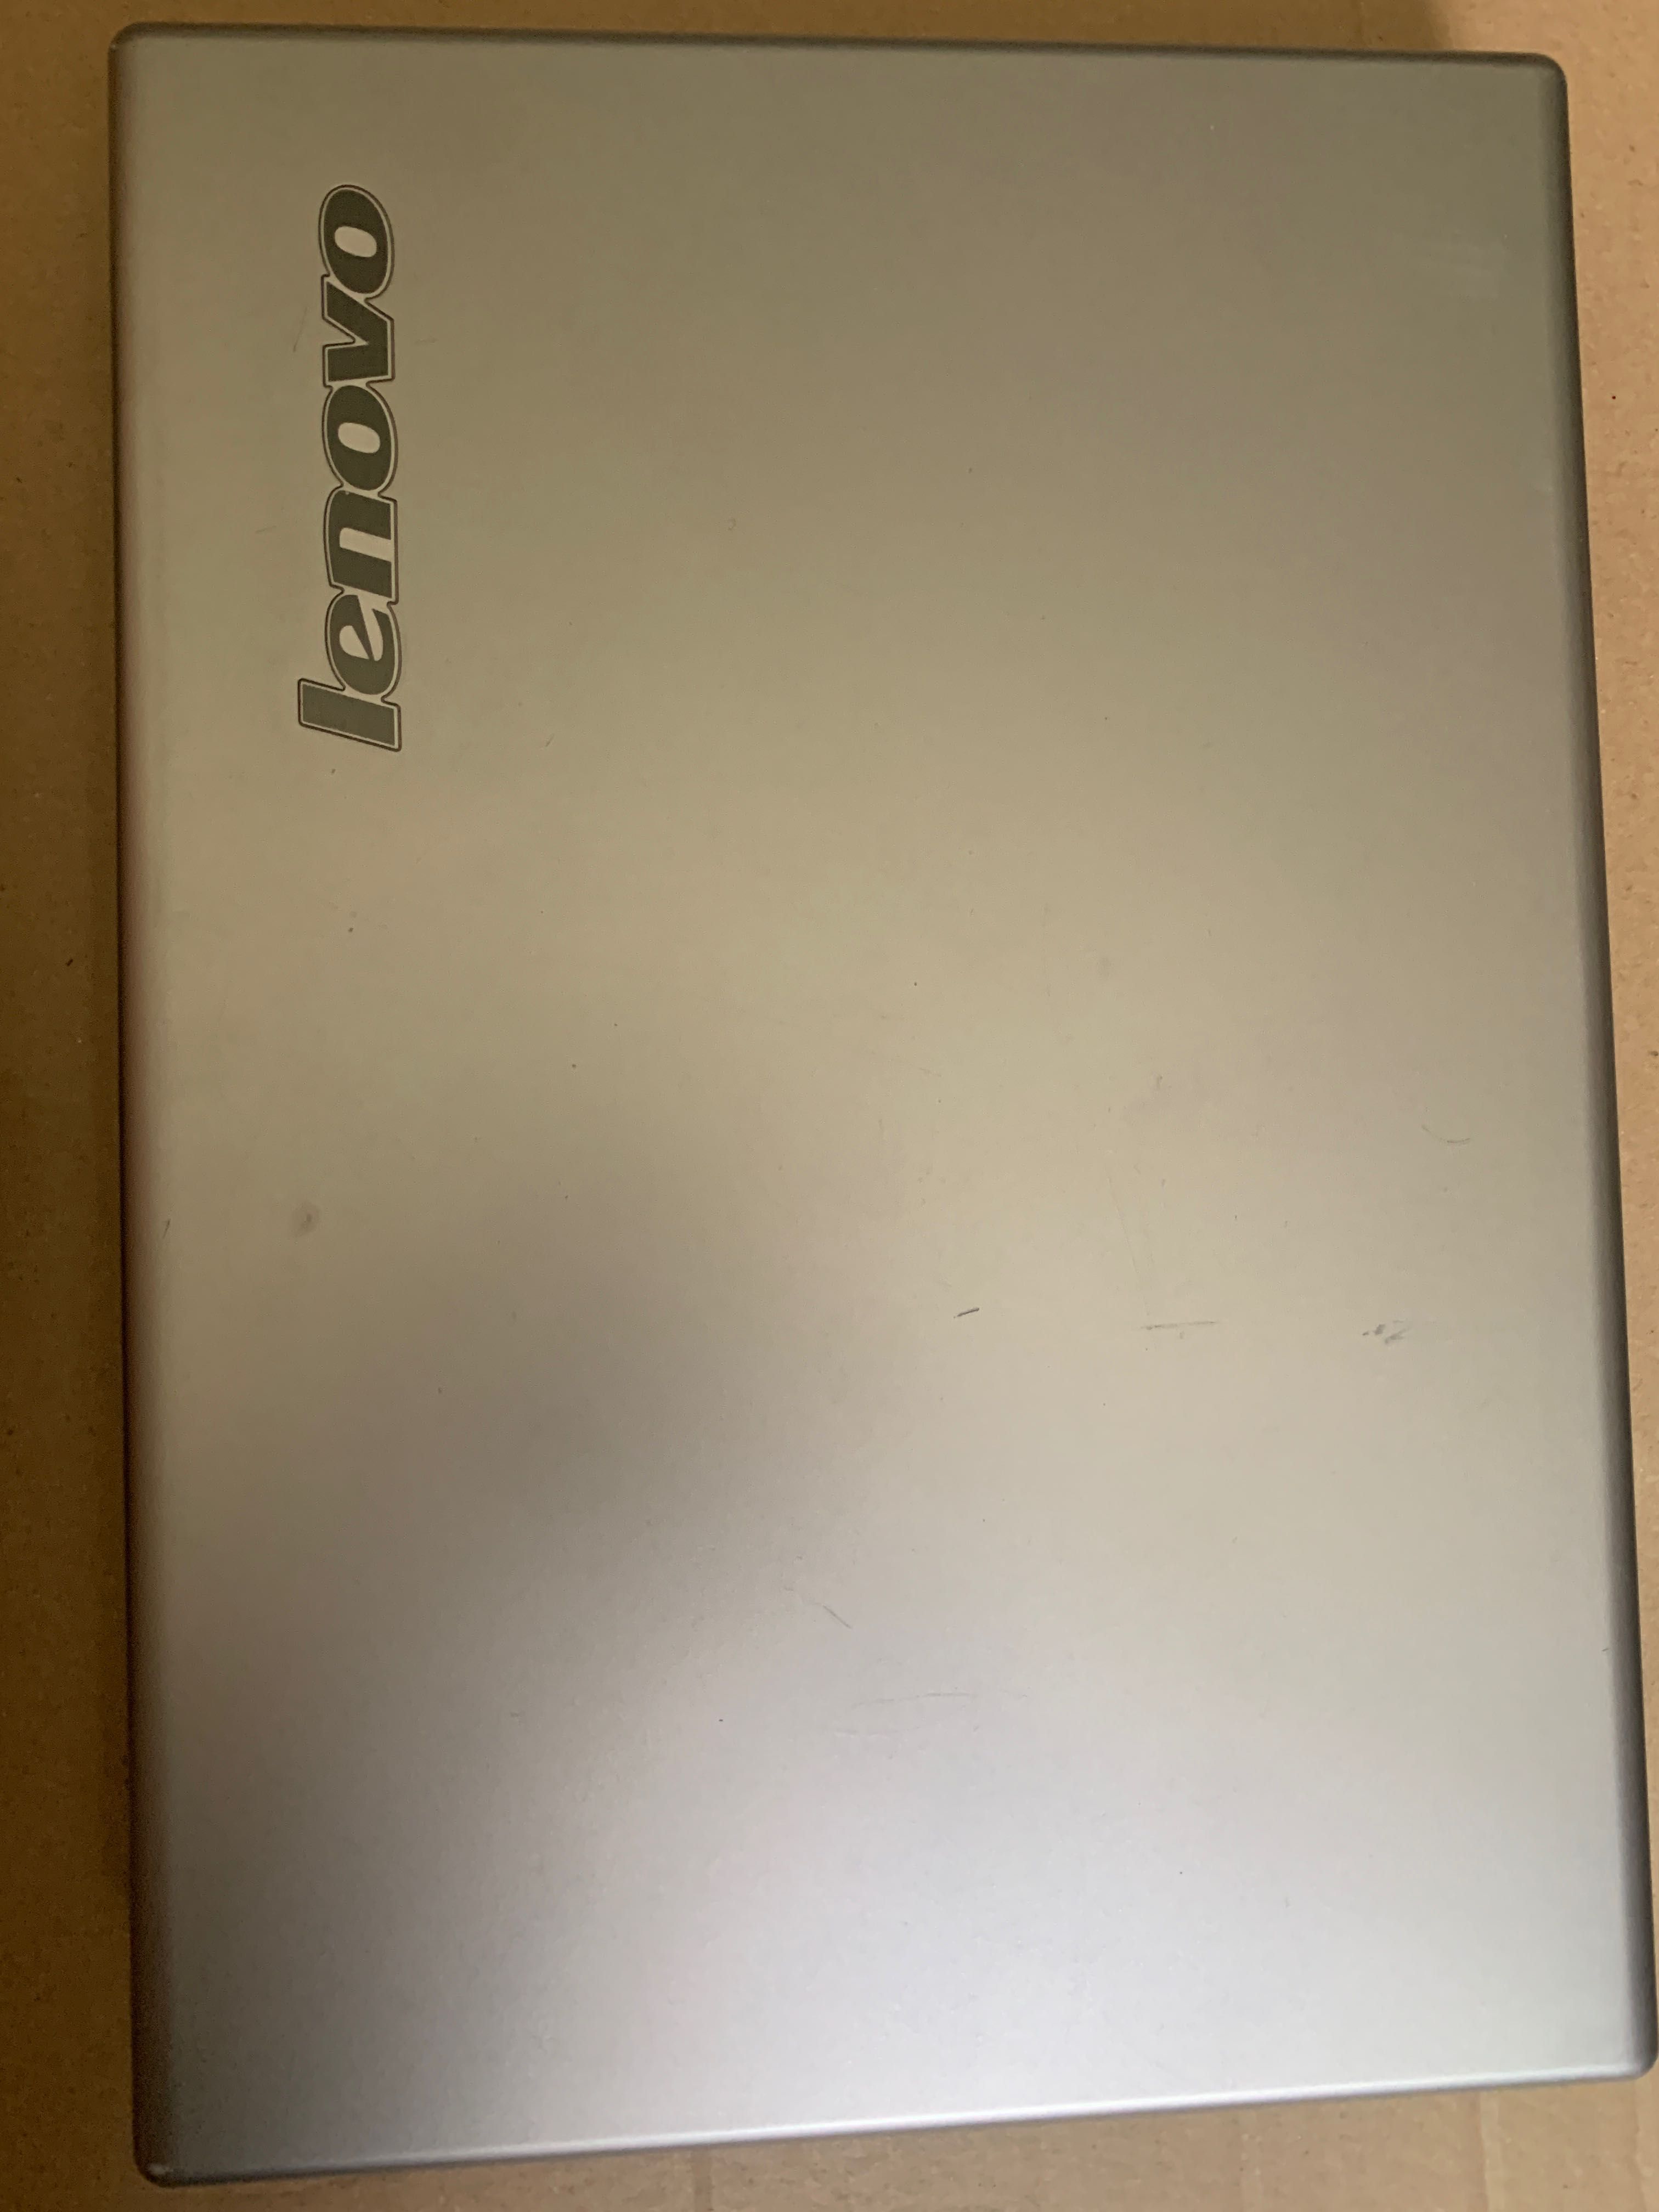 Laptop lenovo N500 + mouse